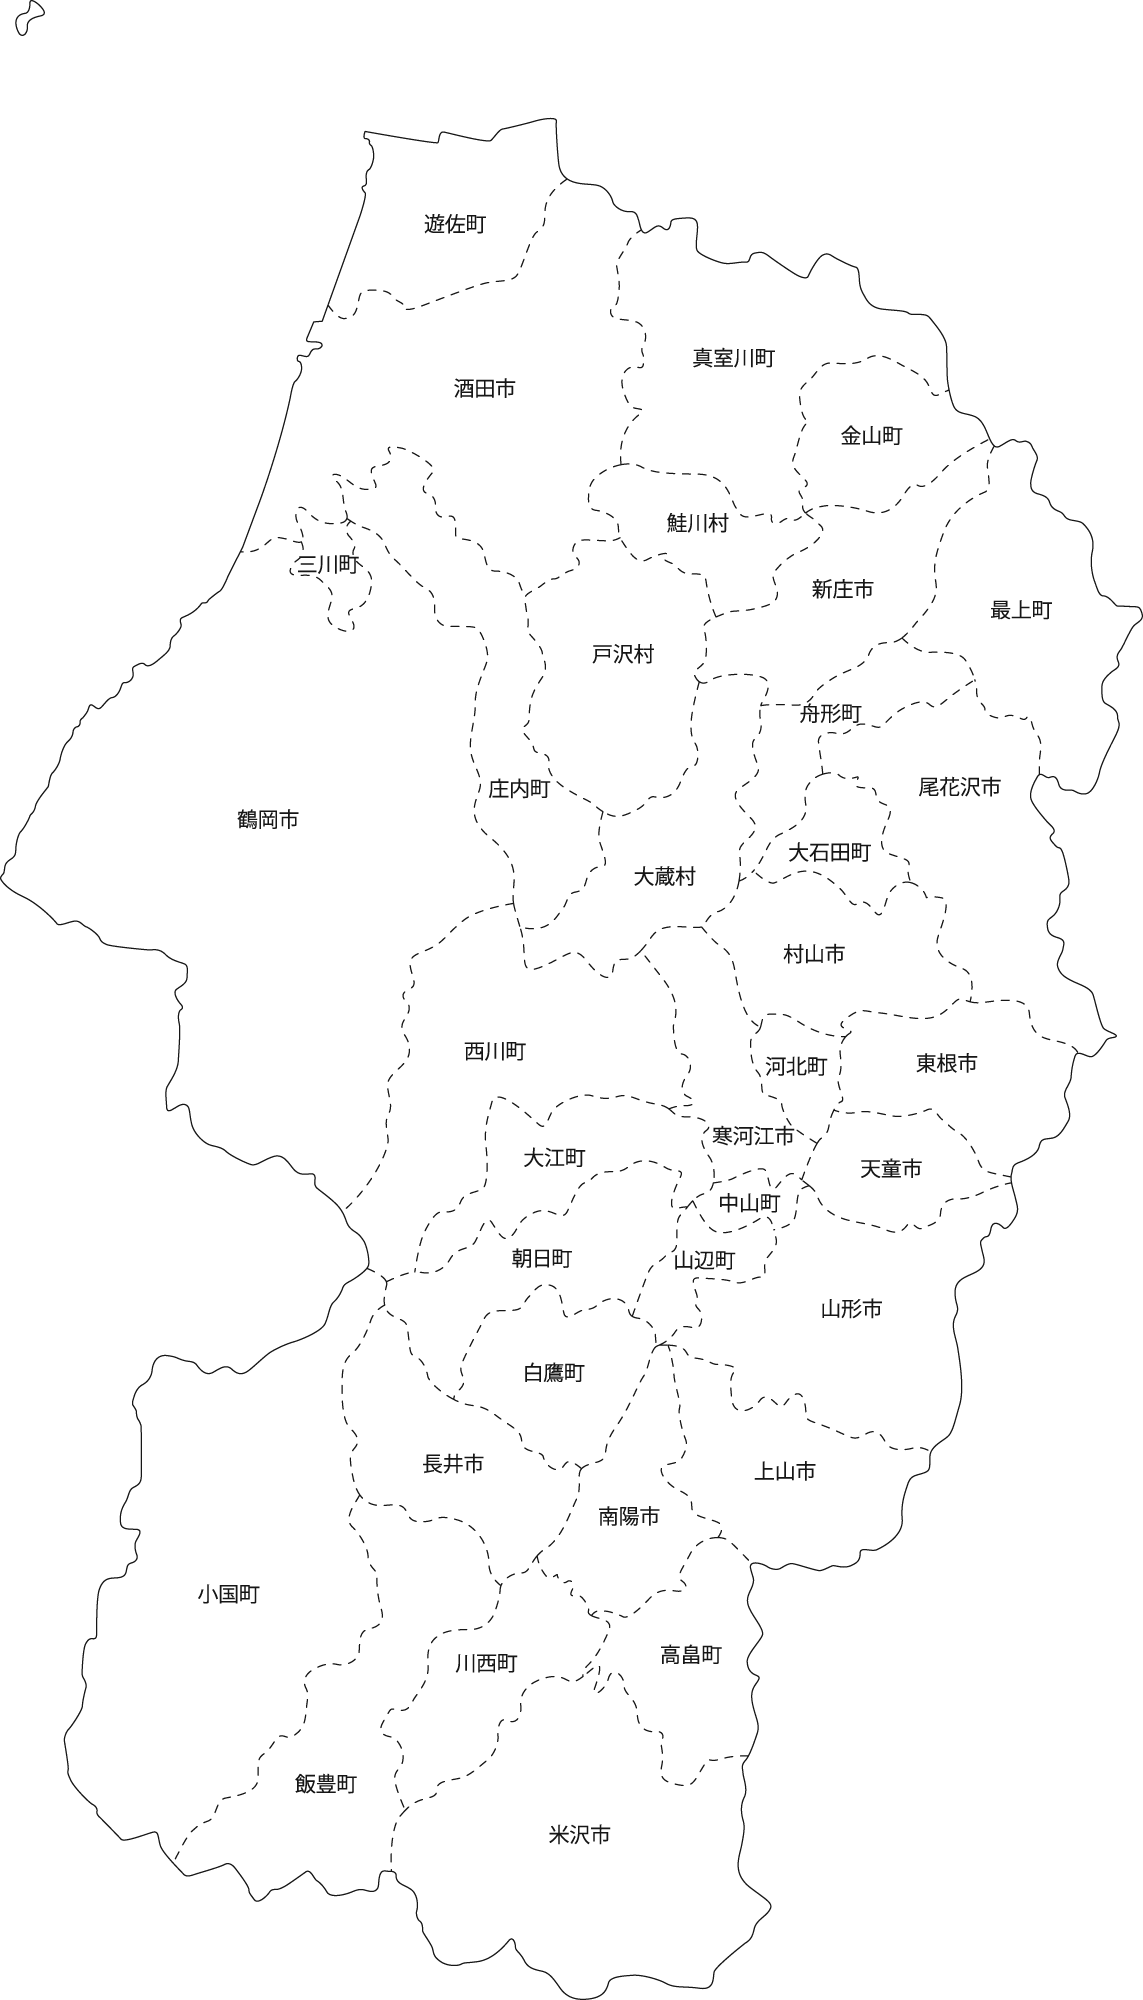 山形県地図